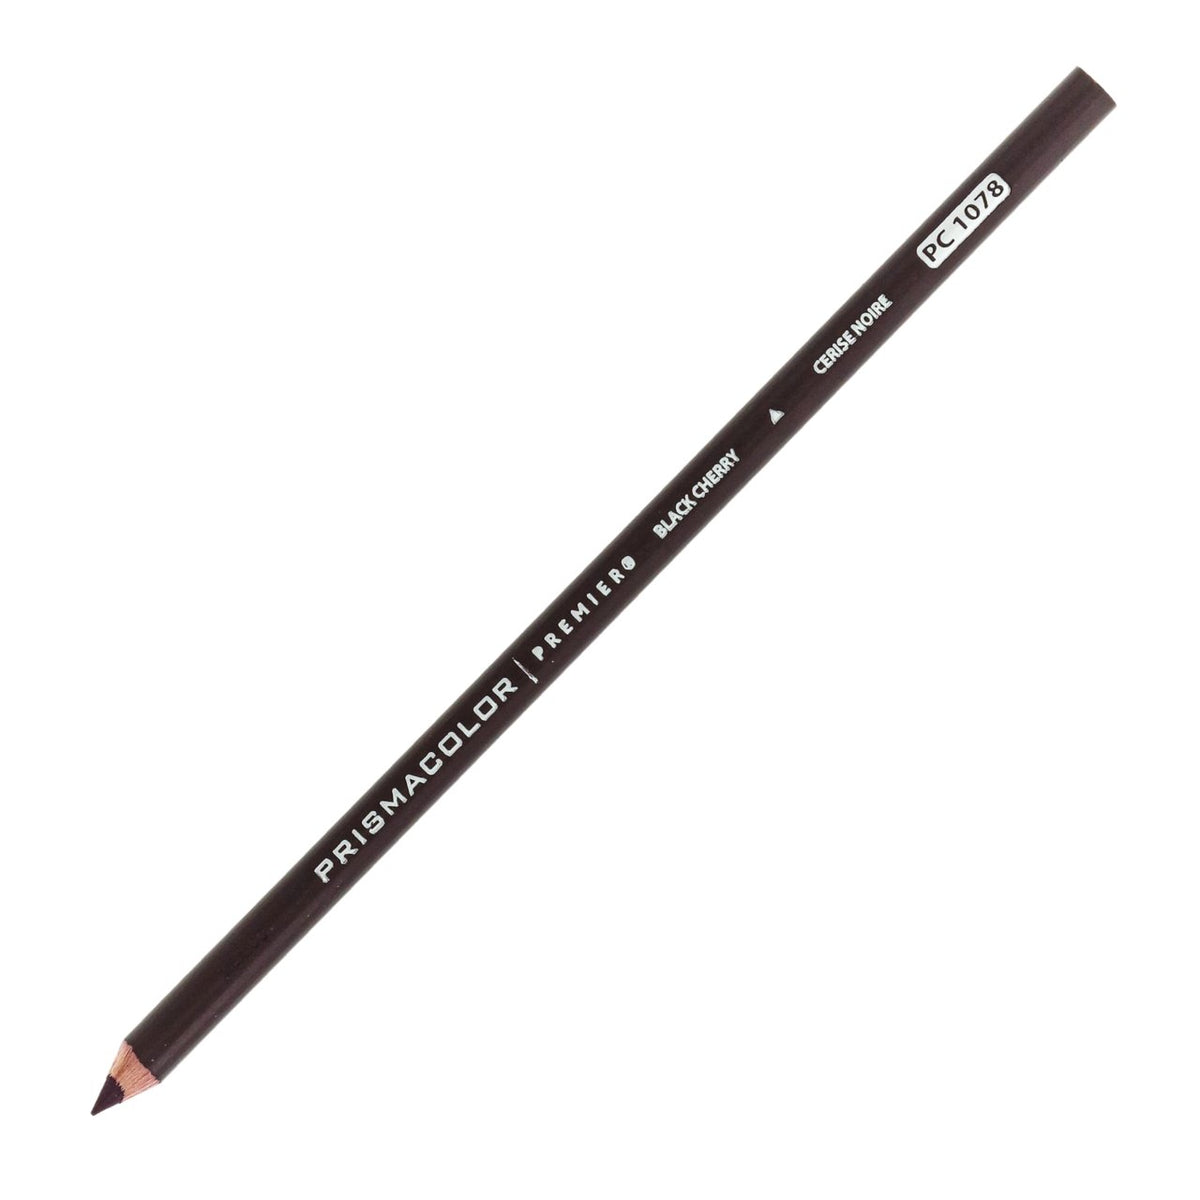 Prismacolor Premier Colored Pencil - Black Cherry 1078 - merriartist.com